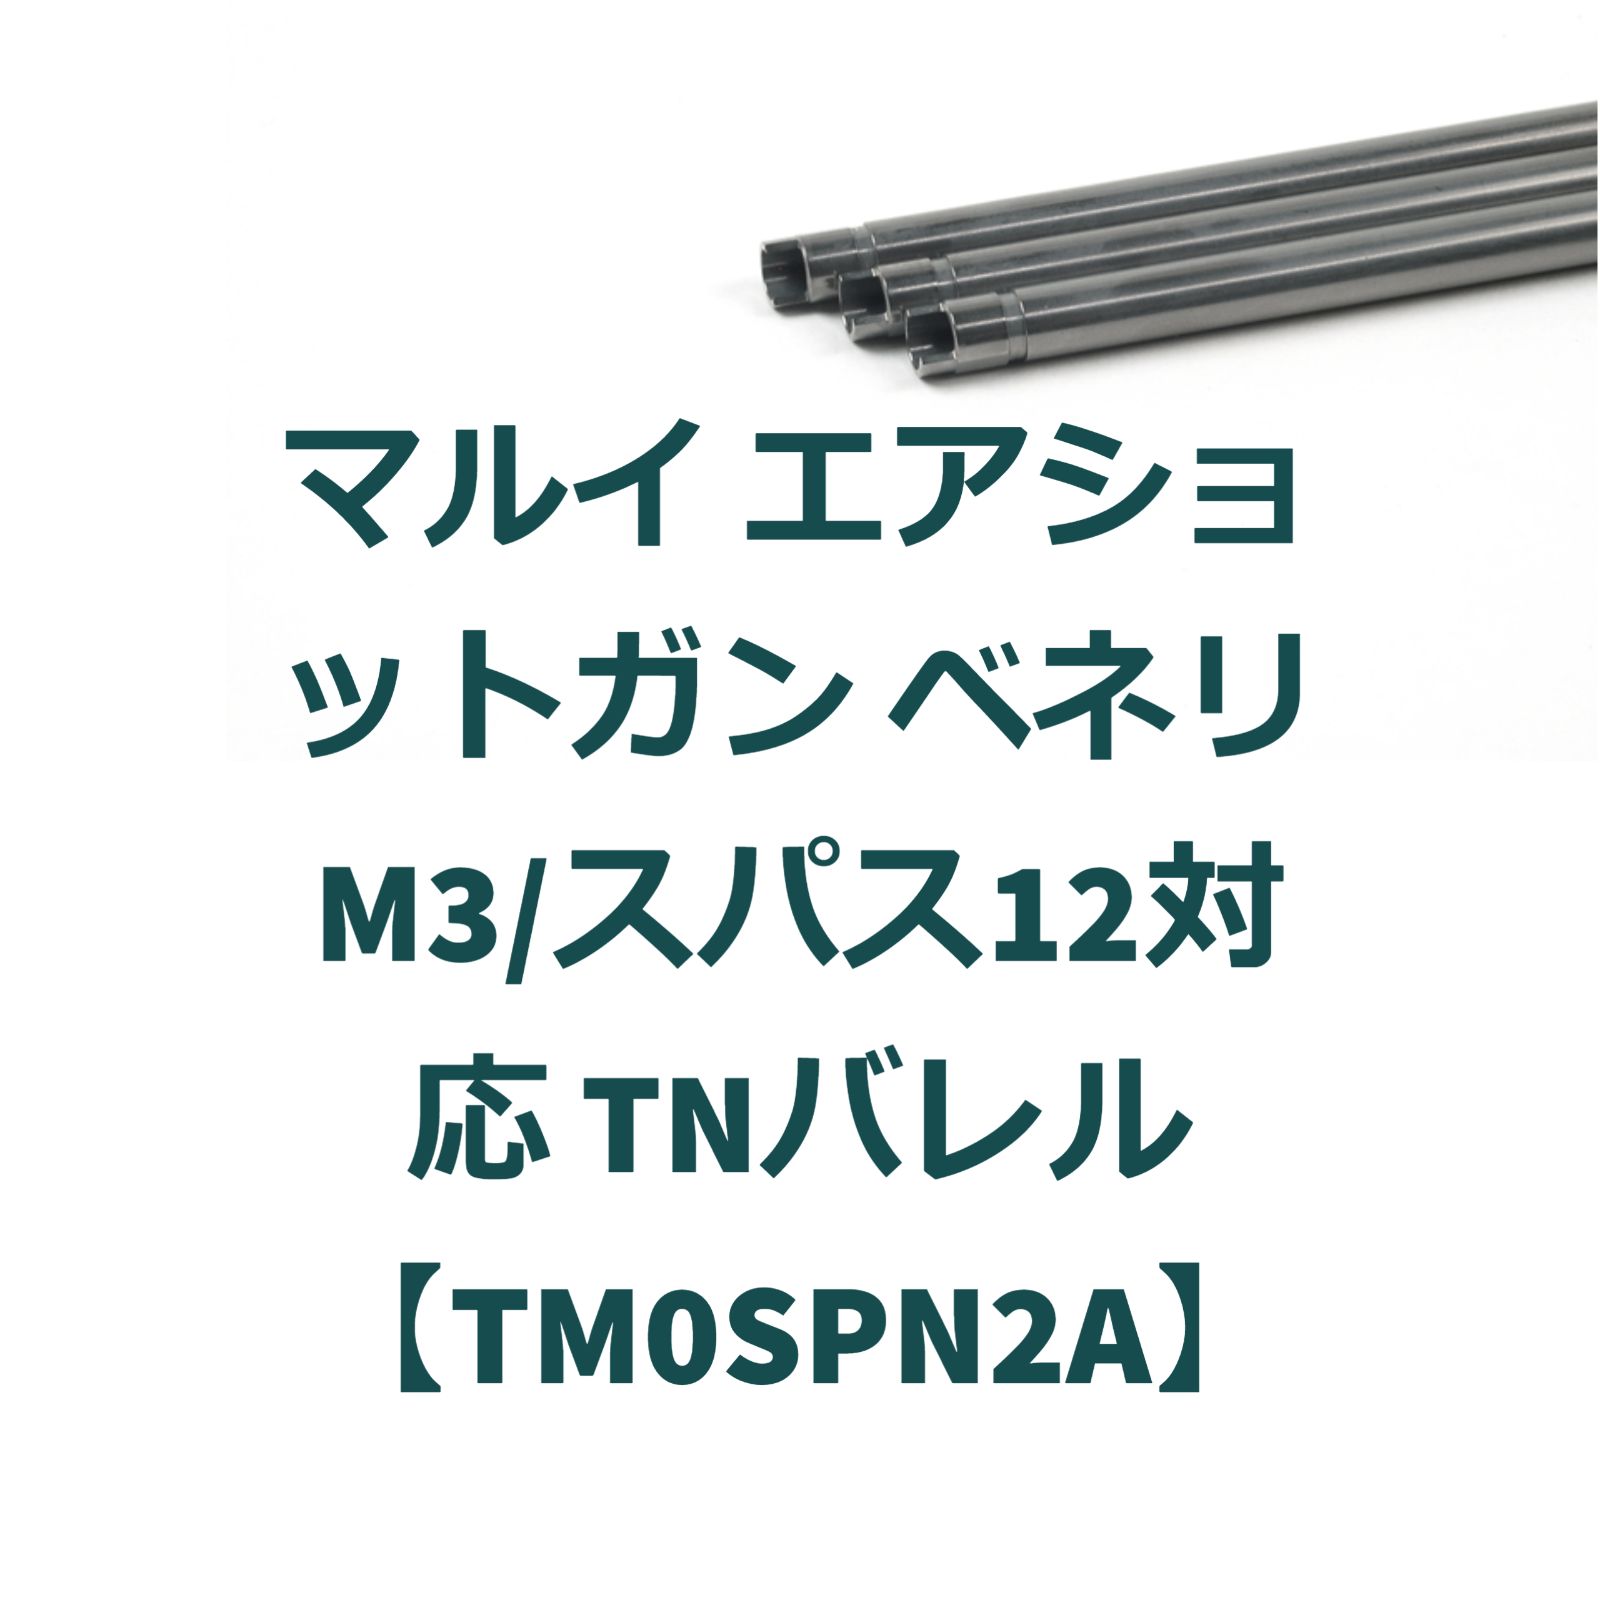 マルイ エアショットガン ベネリM3/スパス12対応 TNバレル【TM0SPN2A